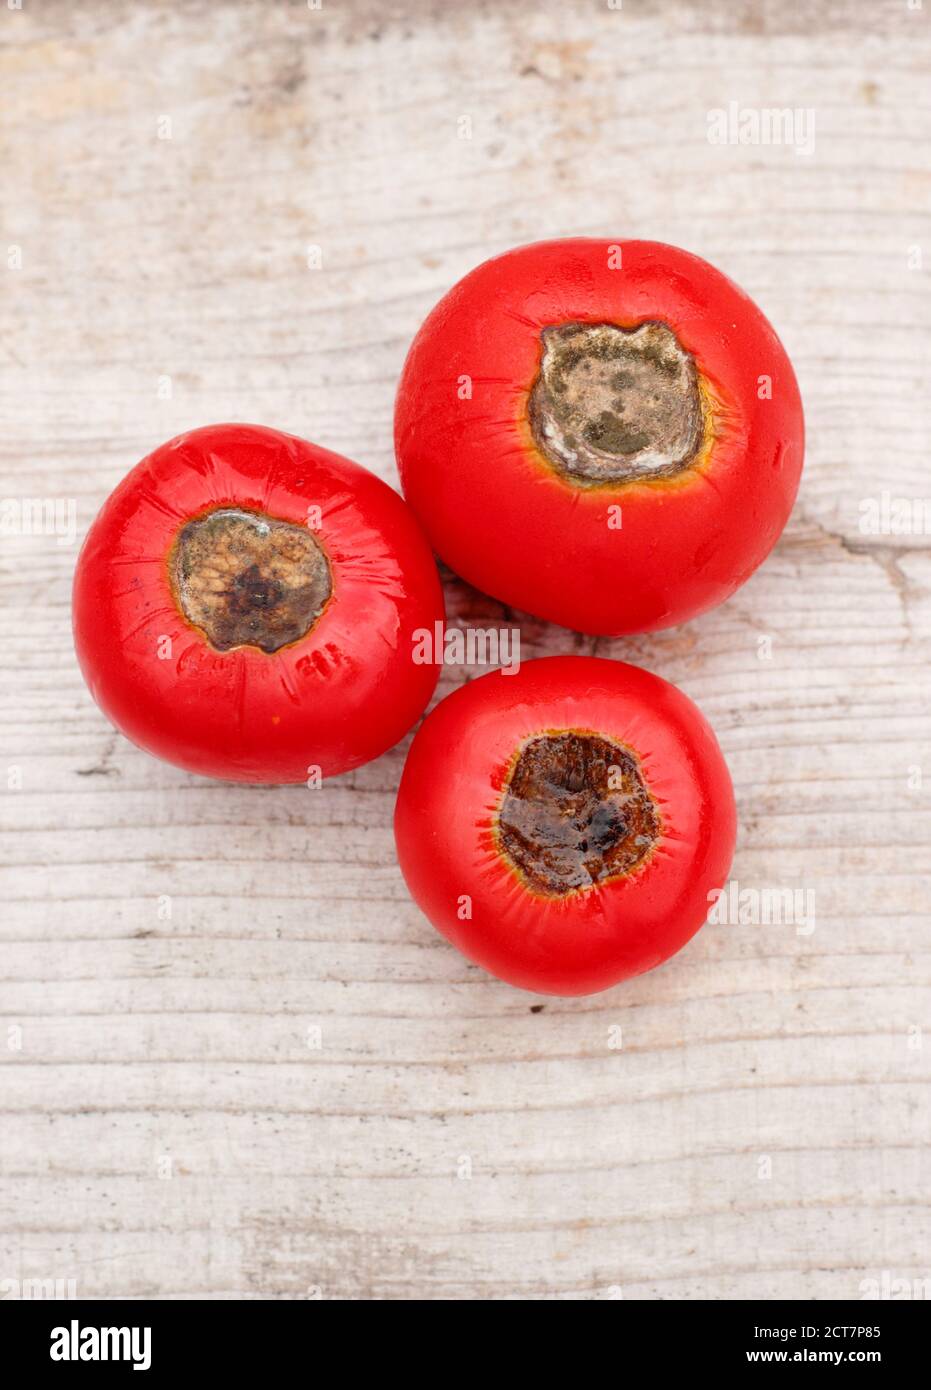 Pomodori coltivati in casa con fine marciume fiorito causato dalla mancanza di calcio e problemi di annaffiatura associati. Solanum lycopersicum "Alicante". Foto Stock